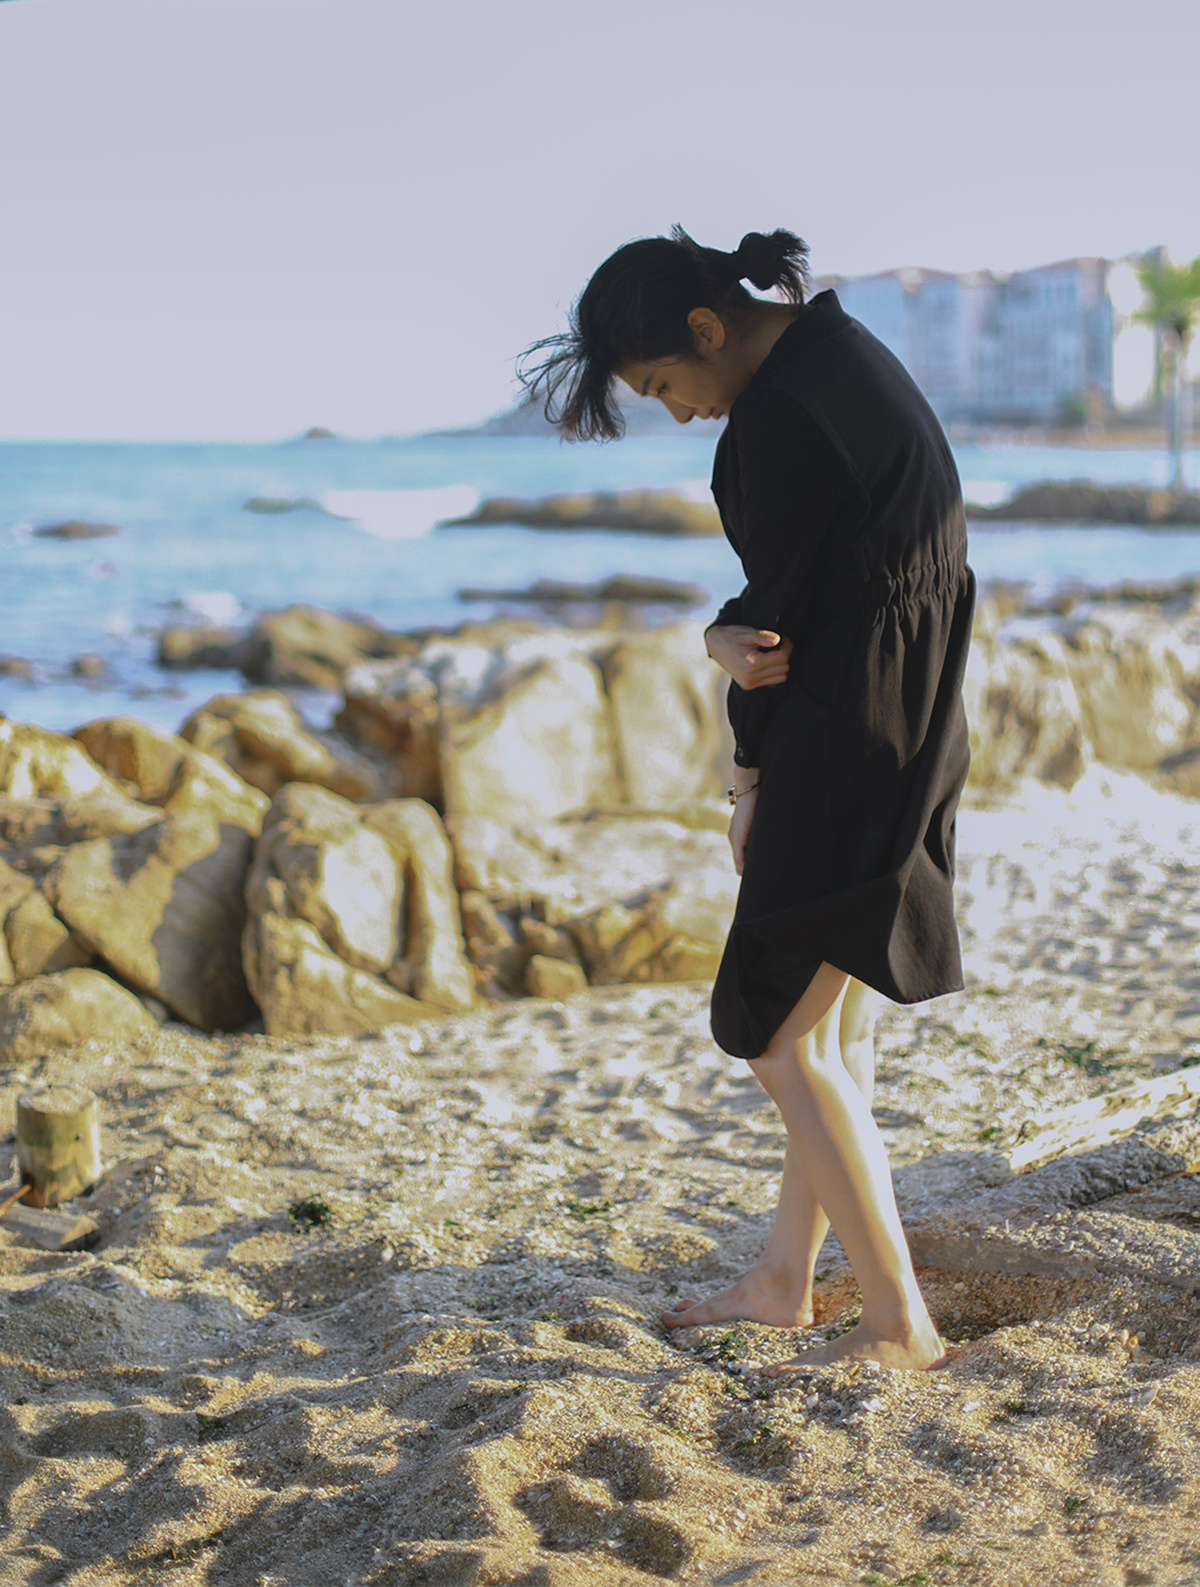 一个穿黑色衣服的年轻女子正在沿着岩石海滩走 而另一个人站在沙滩上。